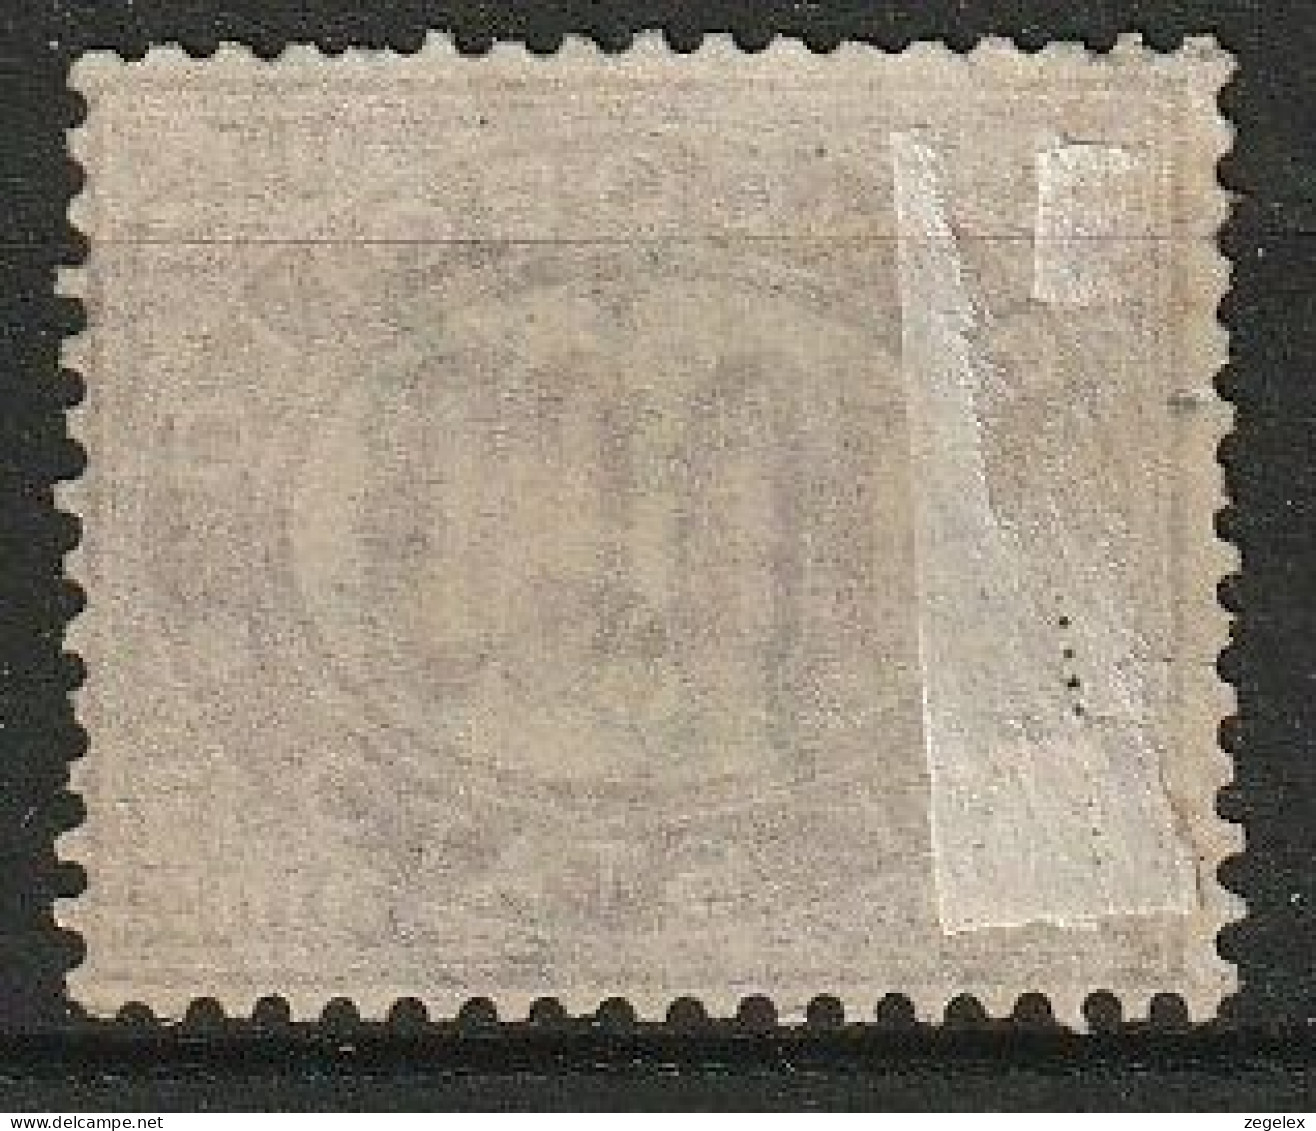 1875 Italia Dienstmarken - Service 10,00 Lire Michel Mi #8, Sassone S8 Used  - Dienstzegels